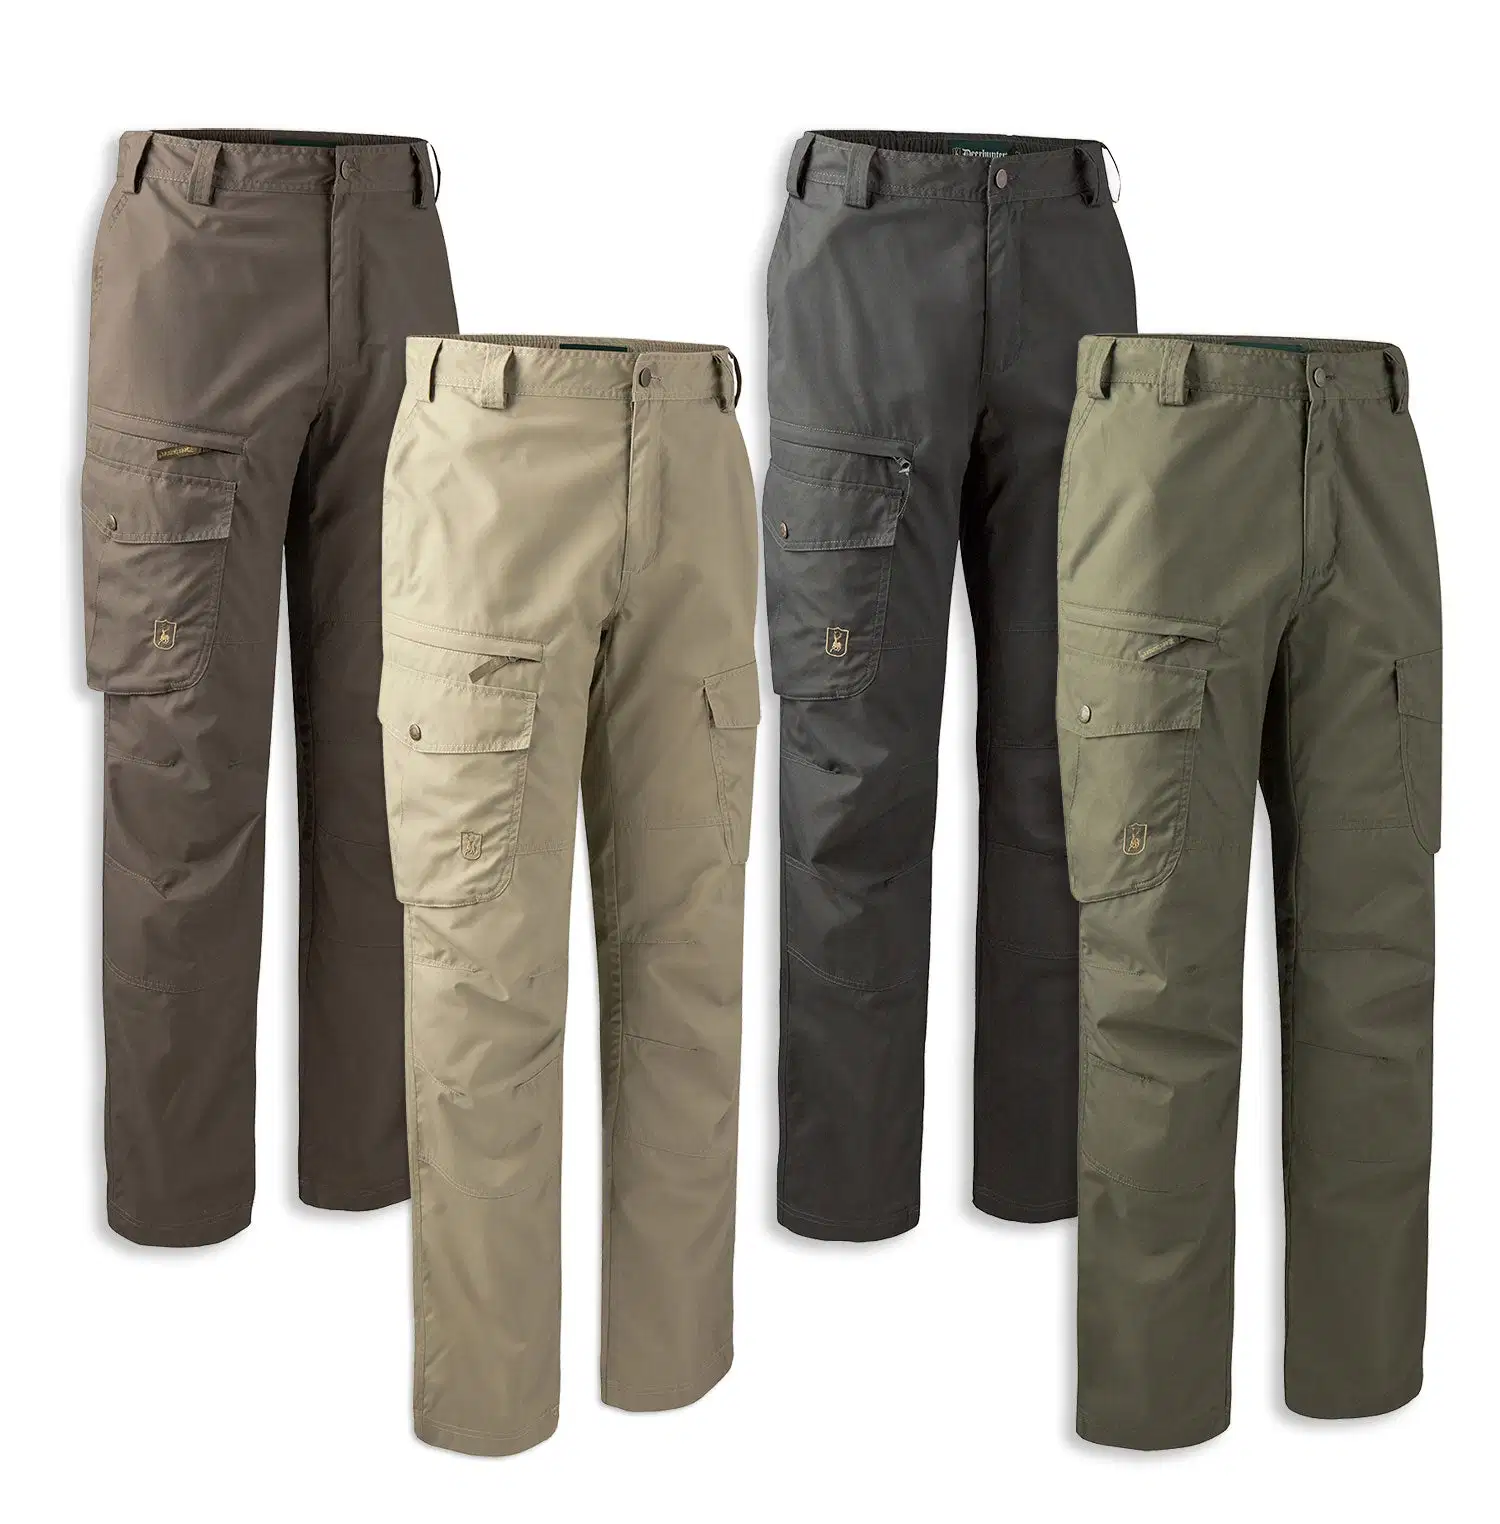 Les hommes" s facile pantalon en coton classique pantalon cargo pantalon de travail avec plusieurs poches